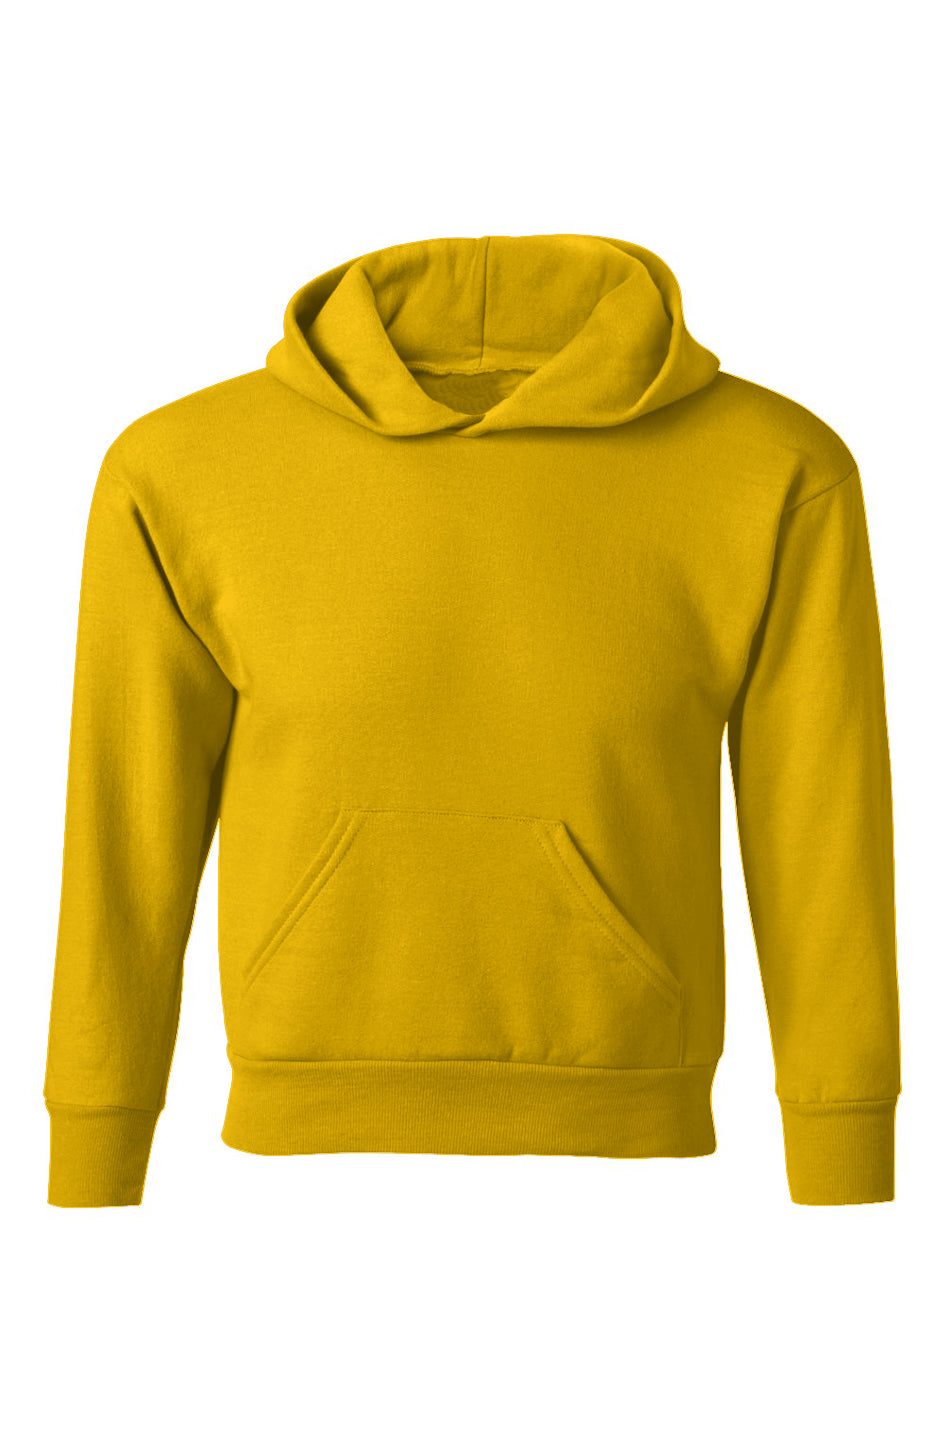 Ecosmart® Youth Hooded Sweatshirt